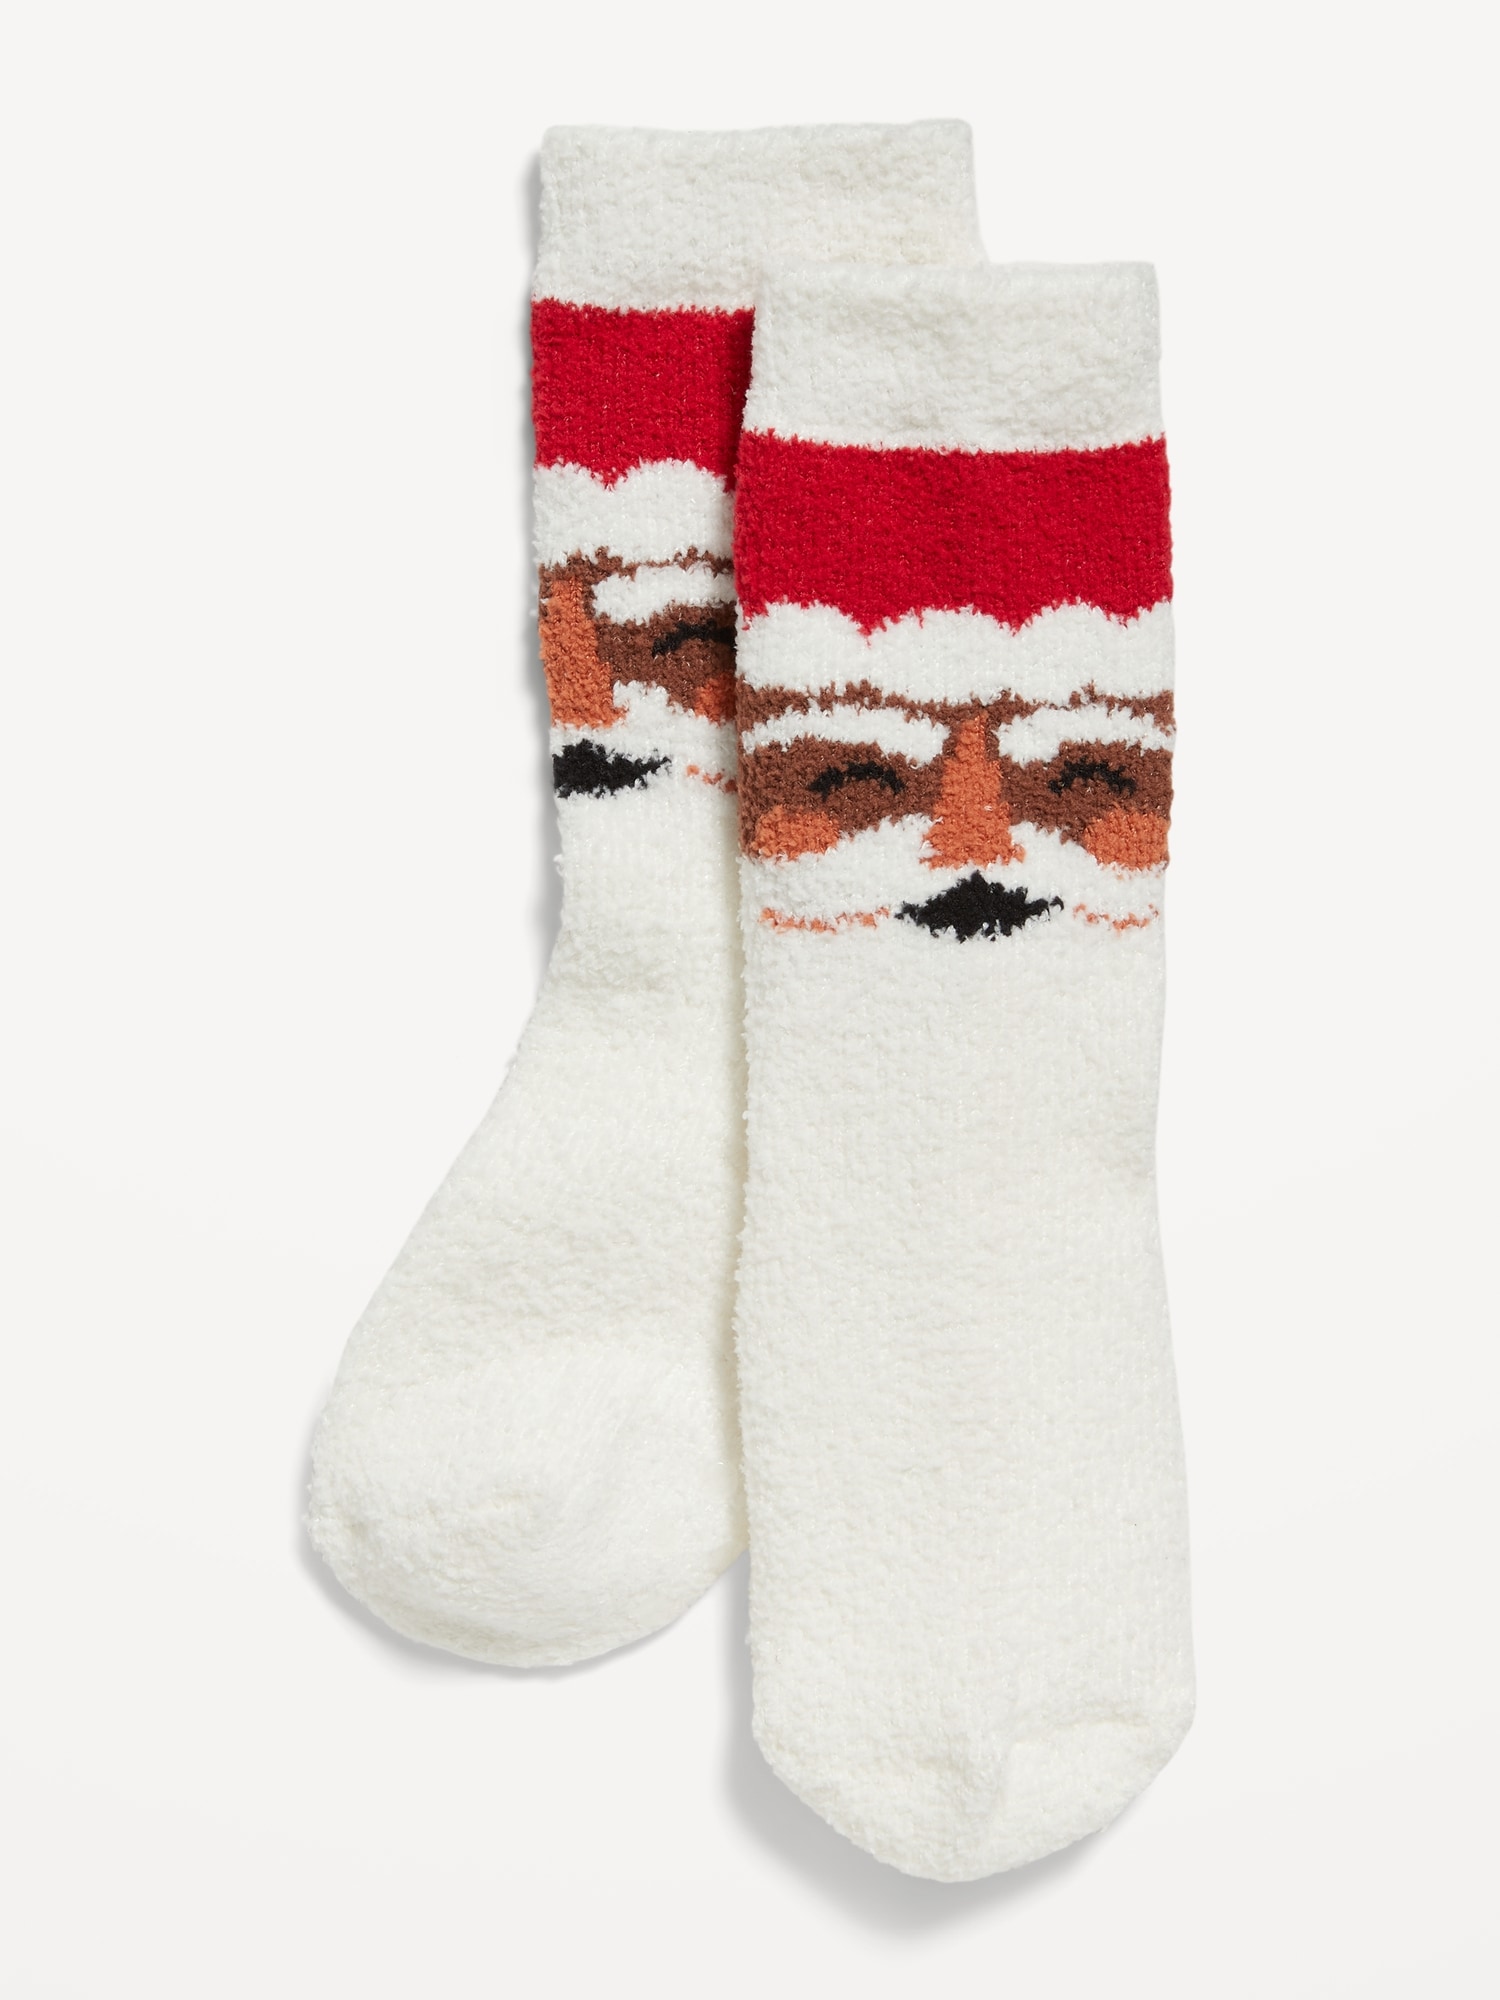 Printed Novelty Socks for Men